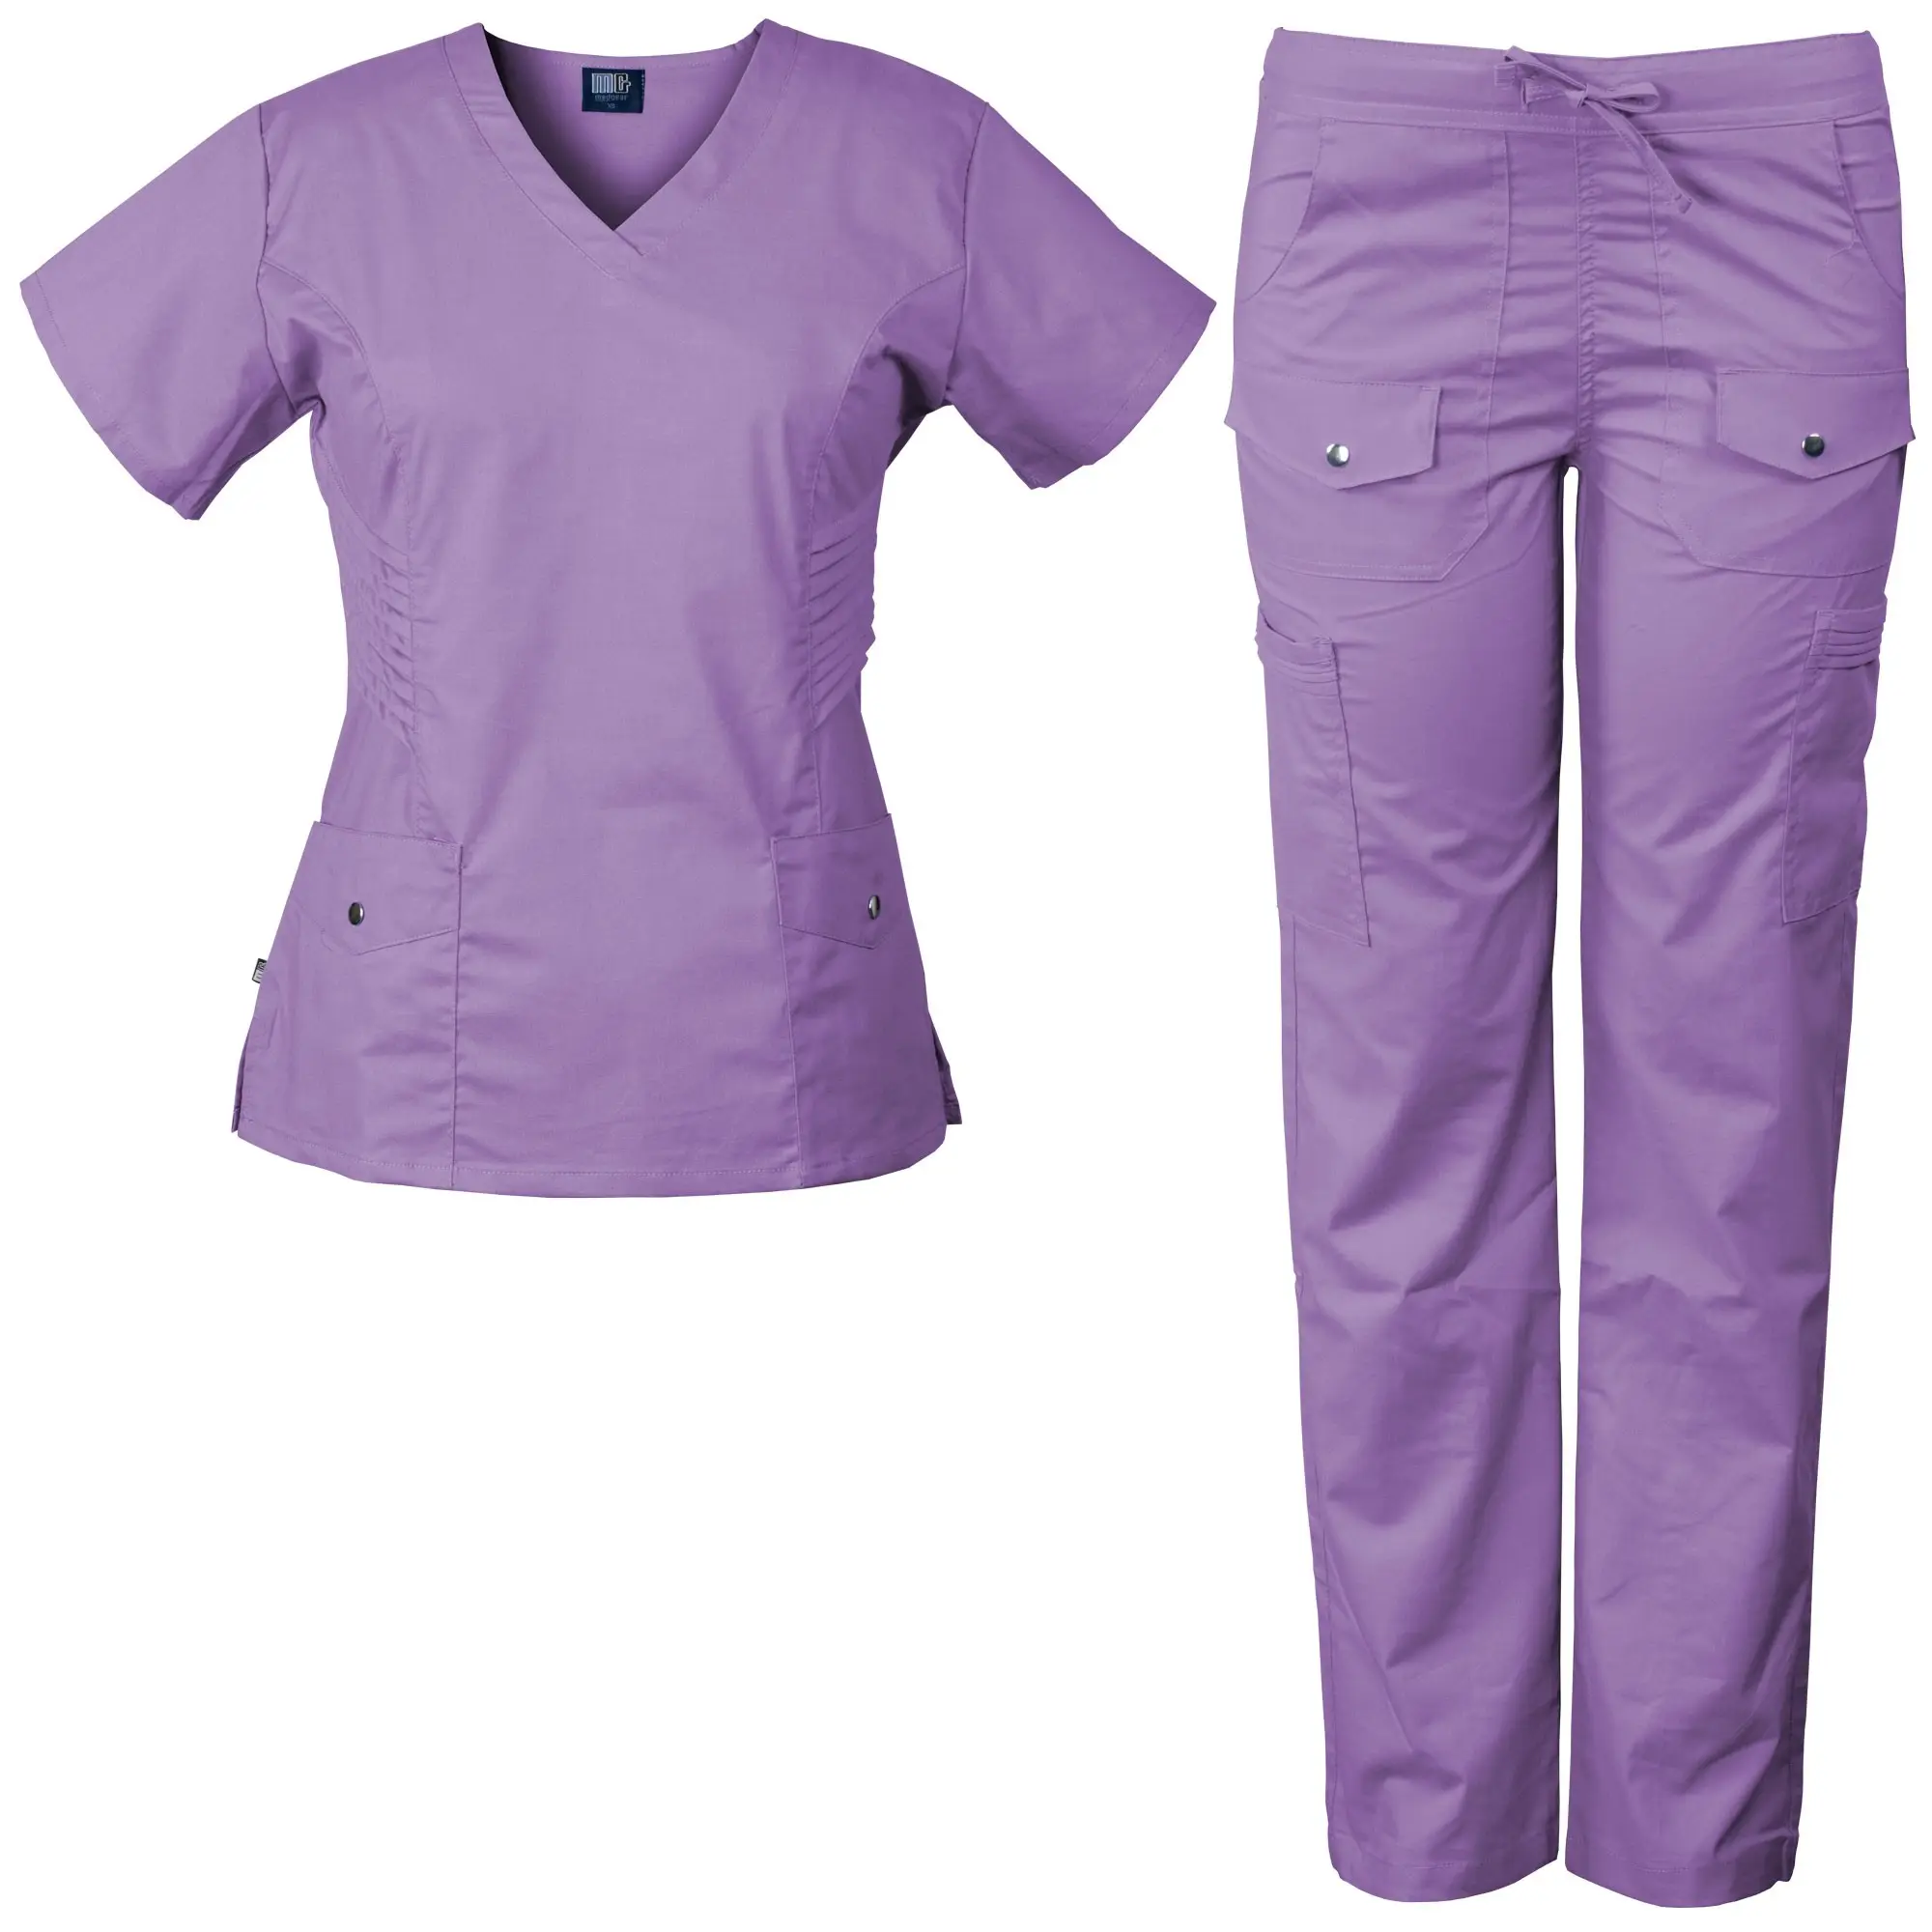 Uniformes médicos y quirúrgicos para Hospital, a la moda uniforme de enfermera, 2013